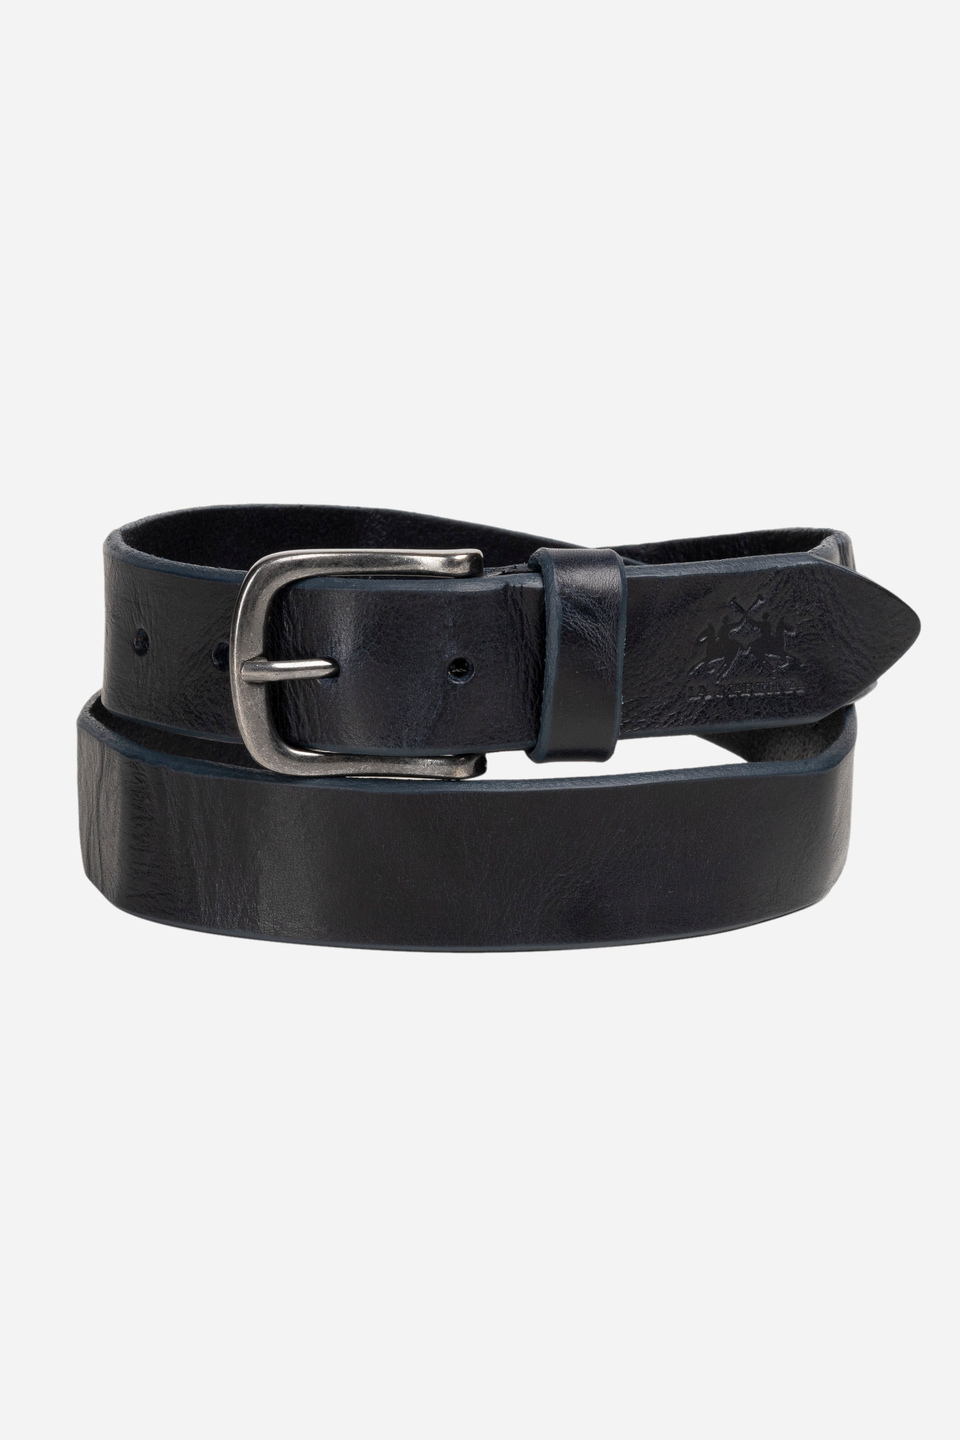 Blue leather belt | La Martina - Official Online Shop